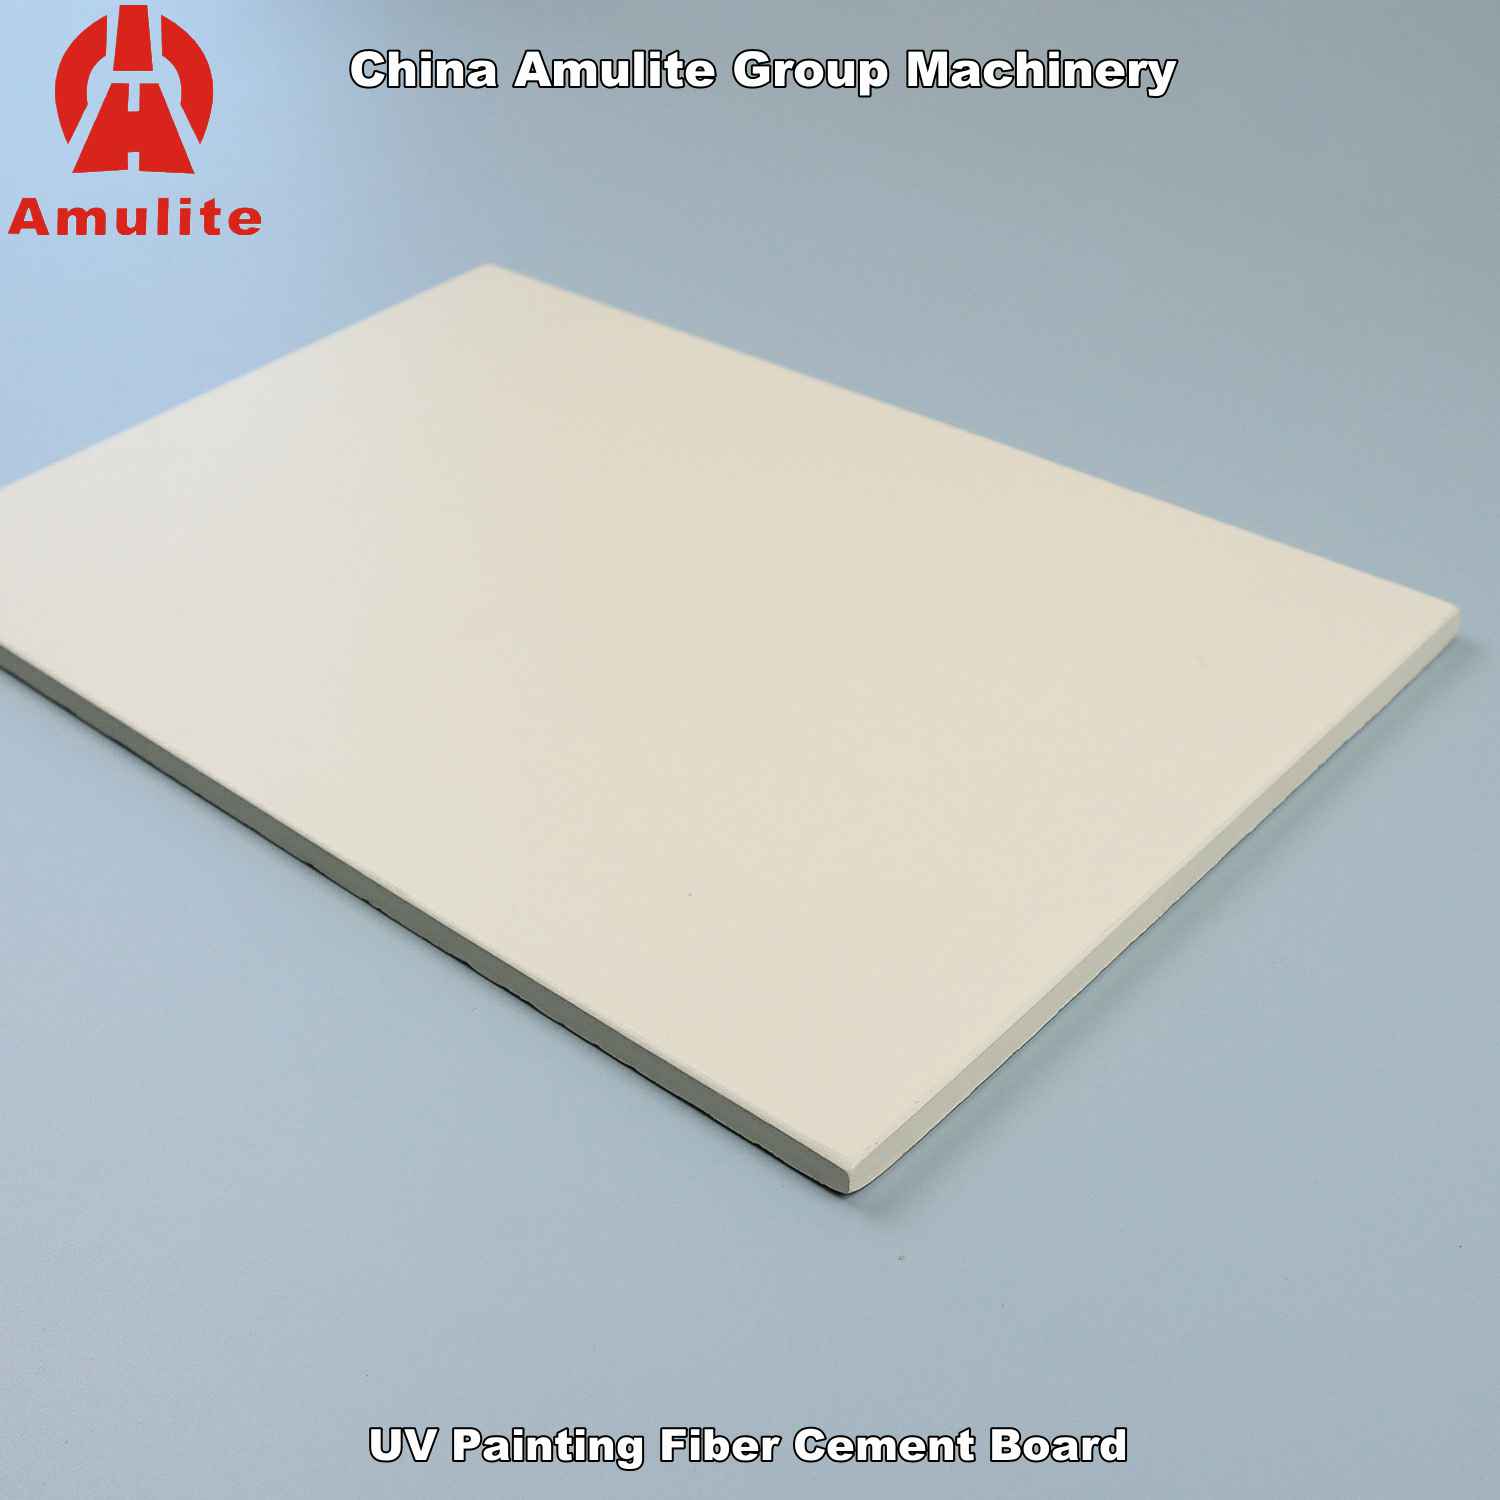 UV skilderij Fiber Cement Board (12)